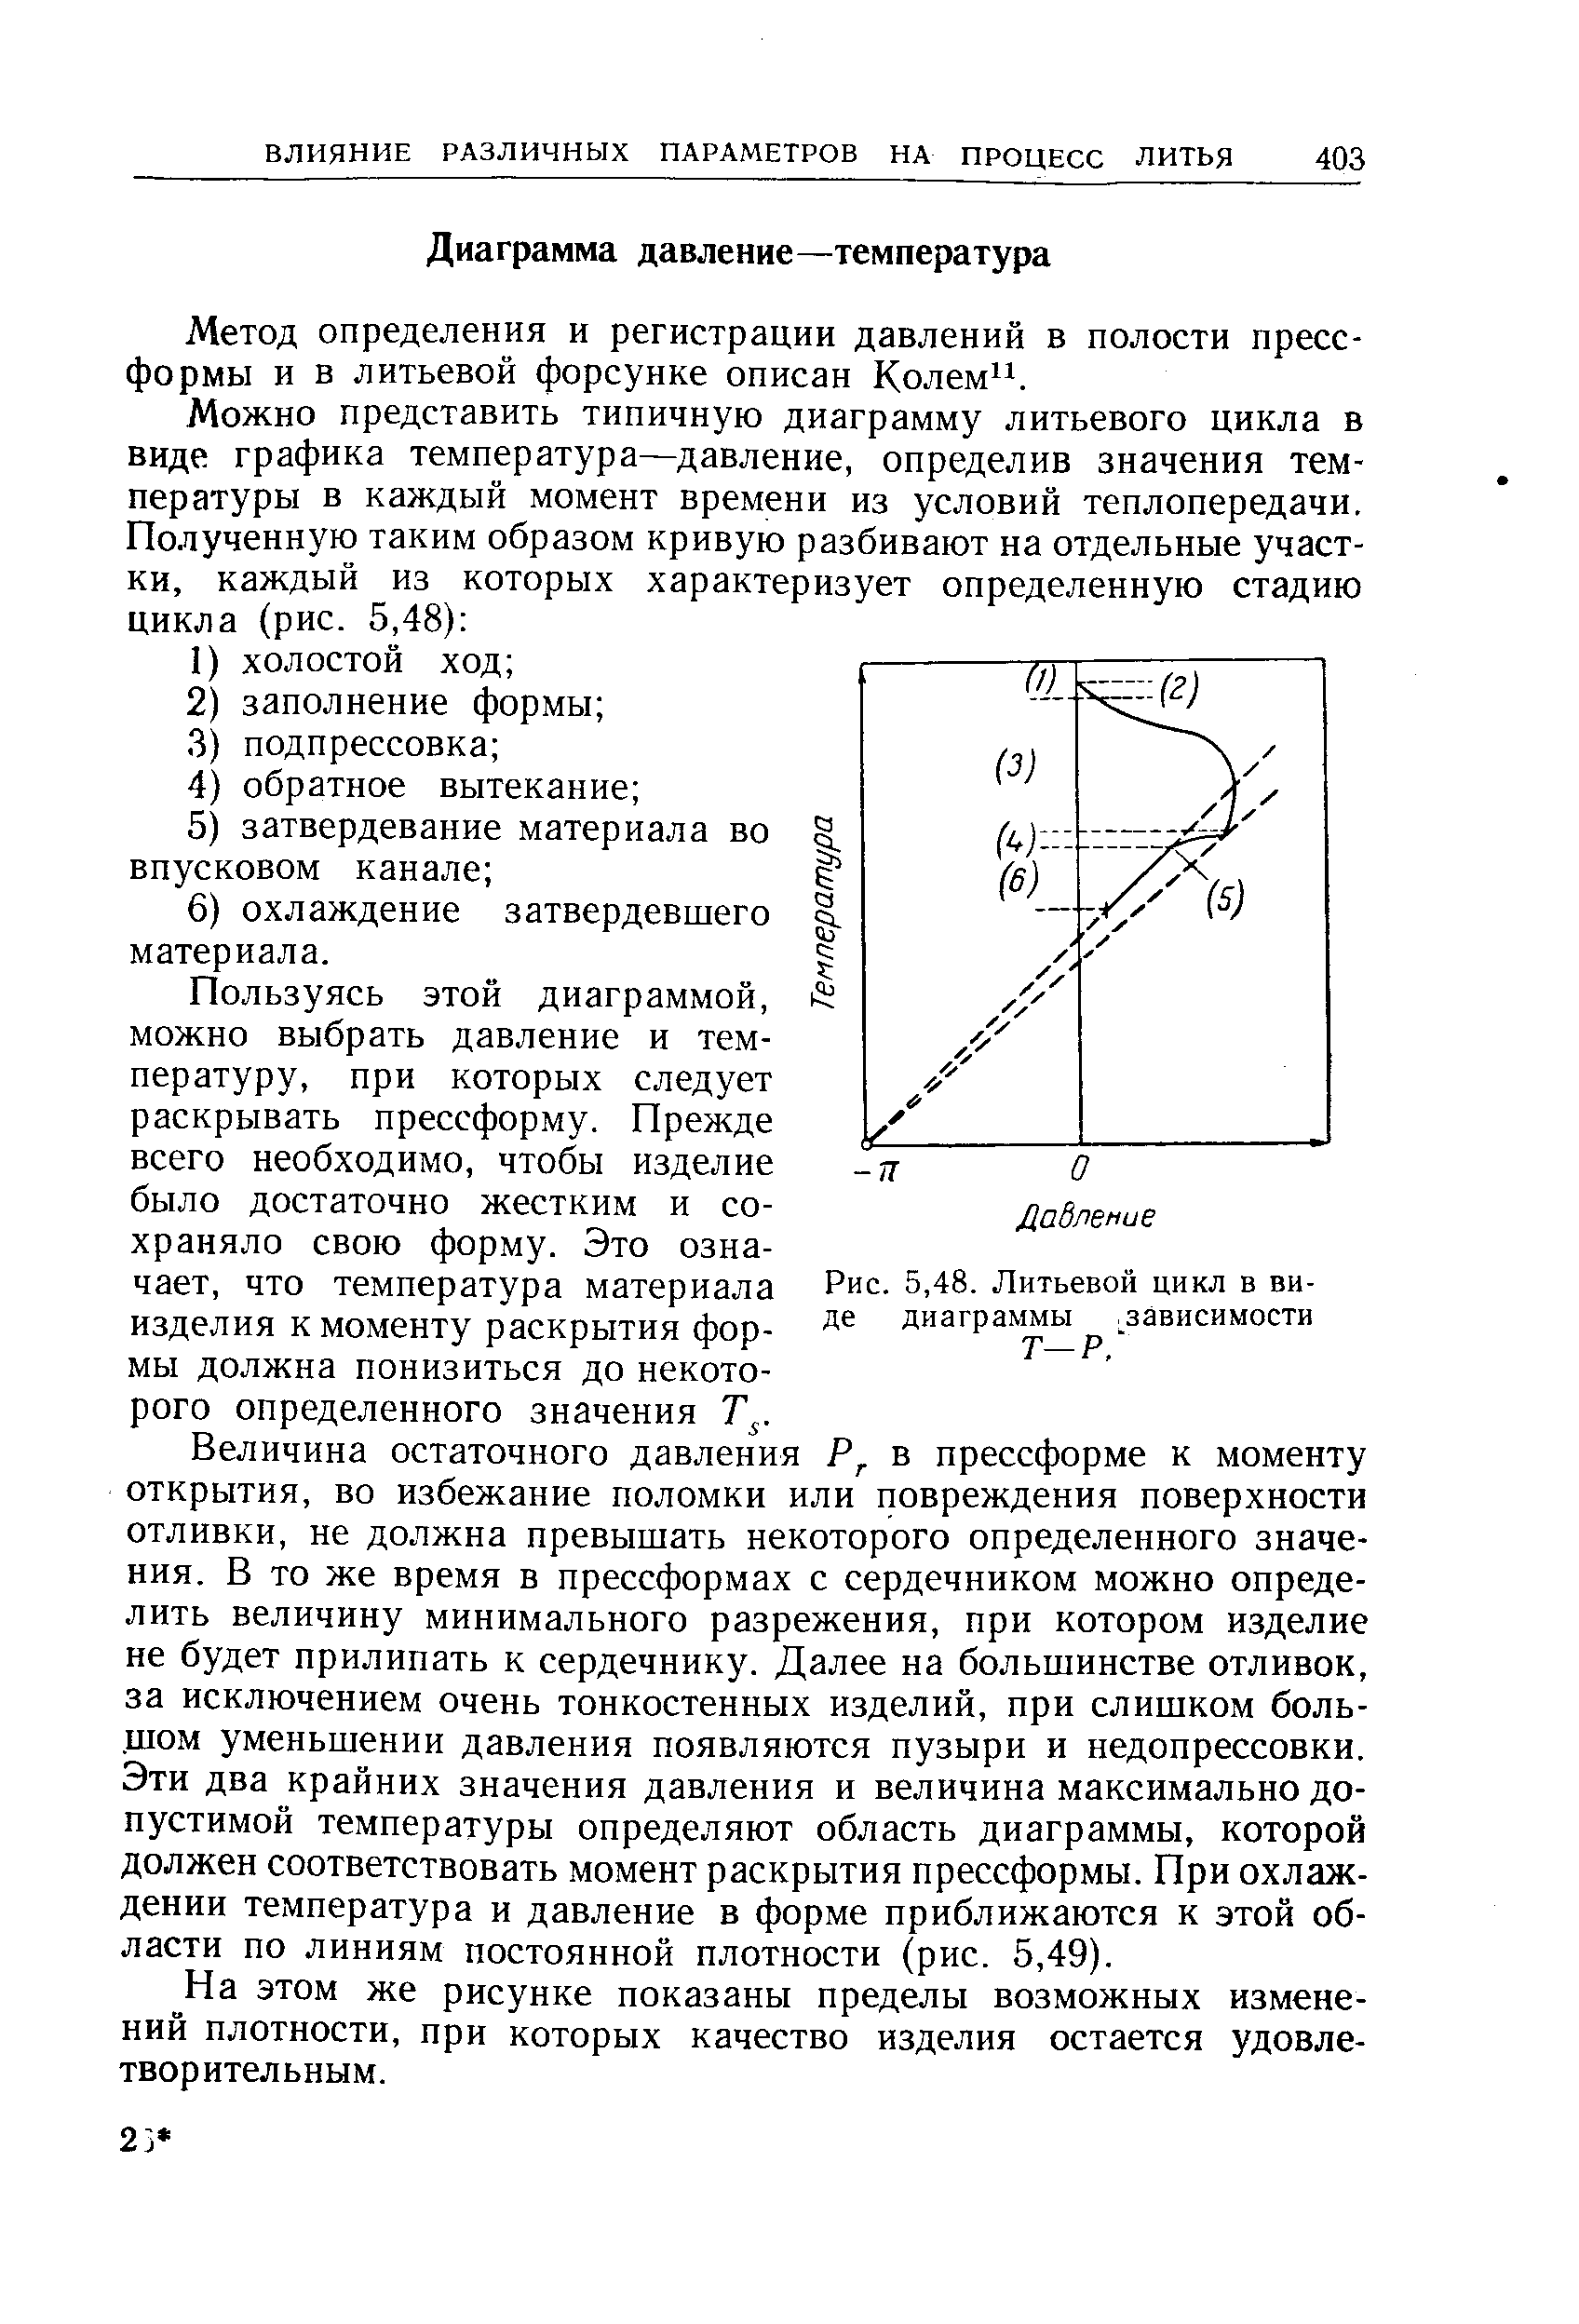 Метод определения и регистрации давлений в полости пресс-формы и в литьевой форсунке описан Колем .